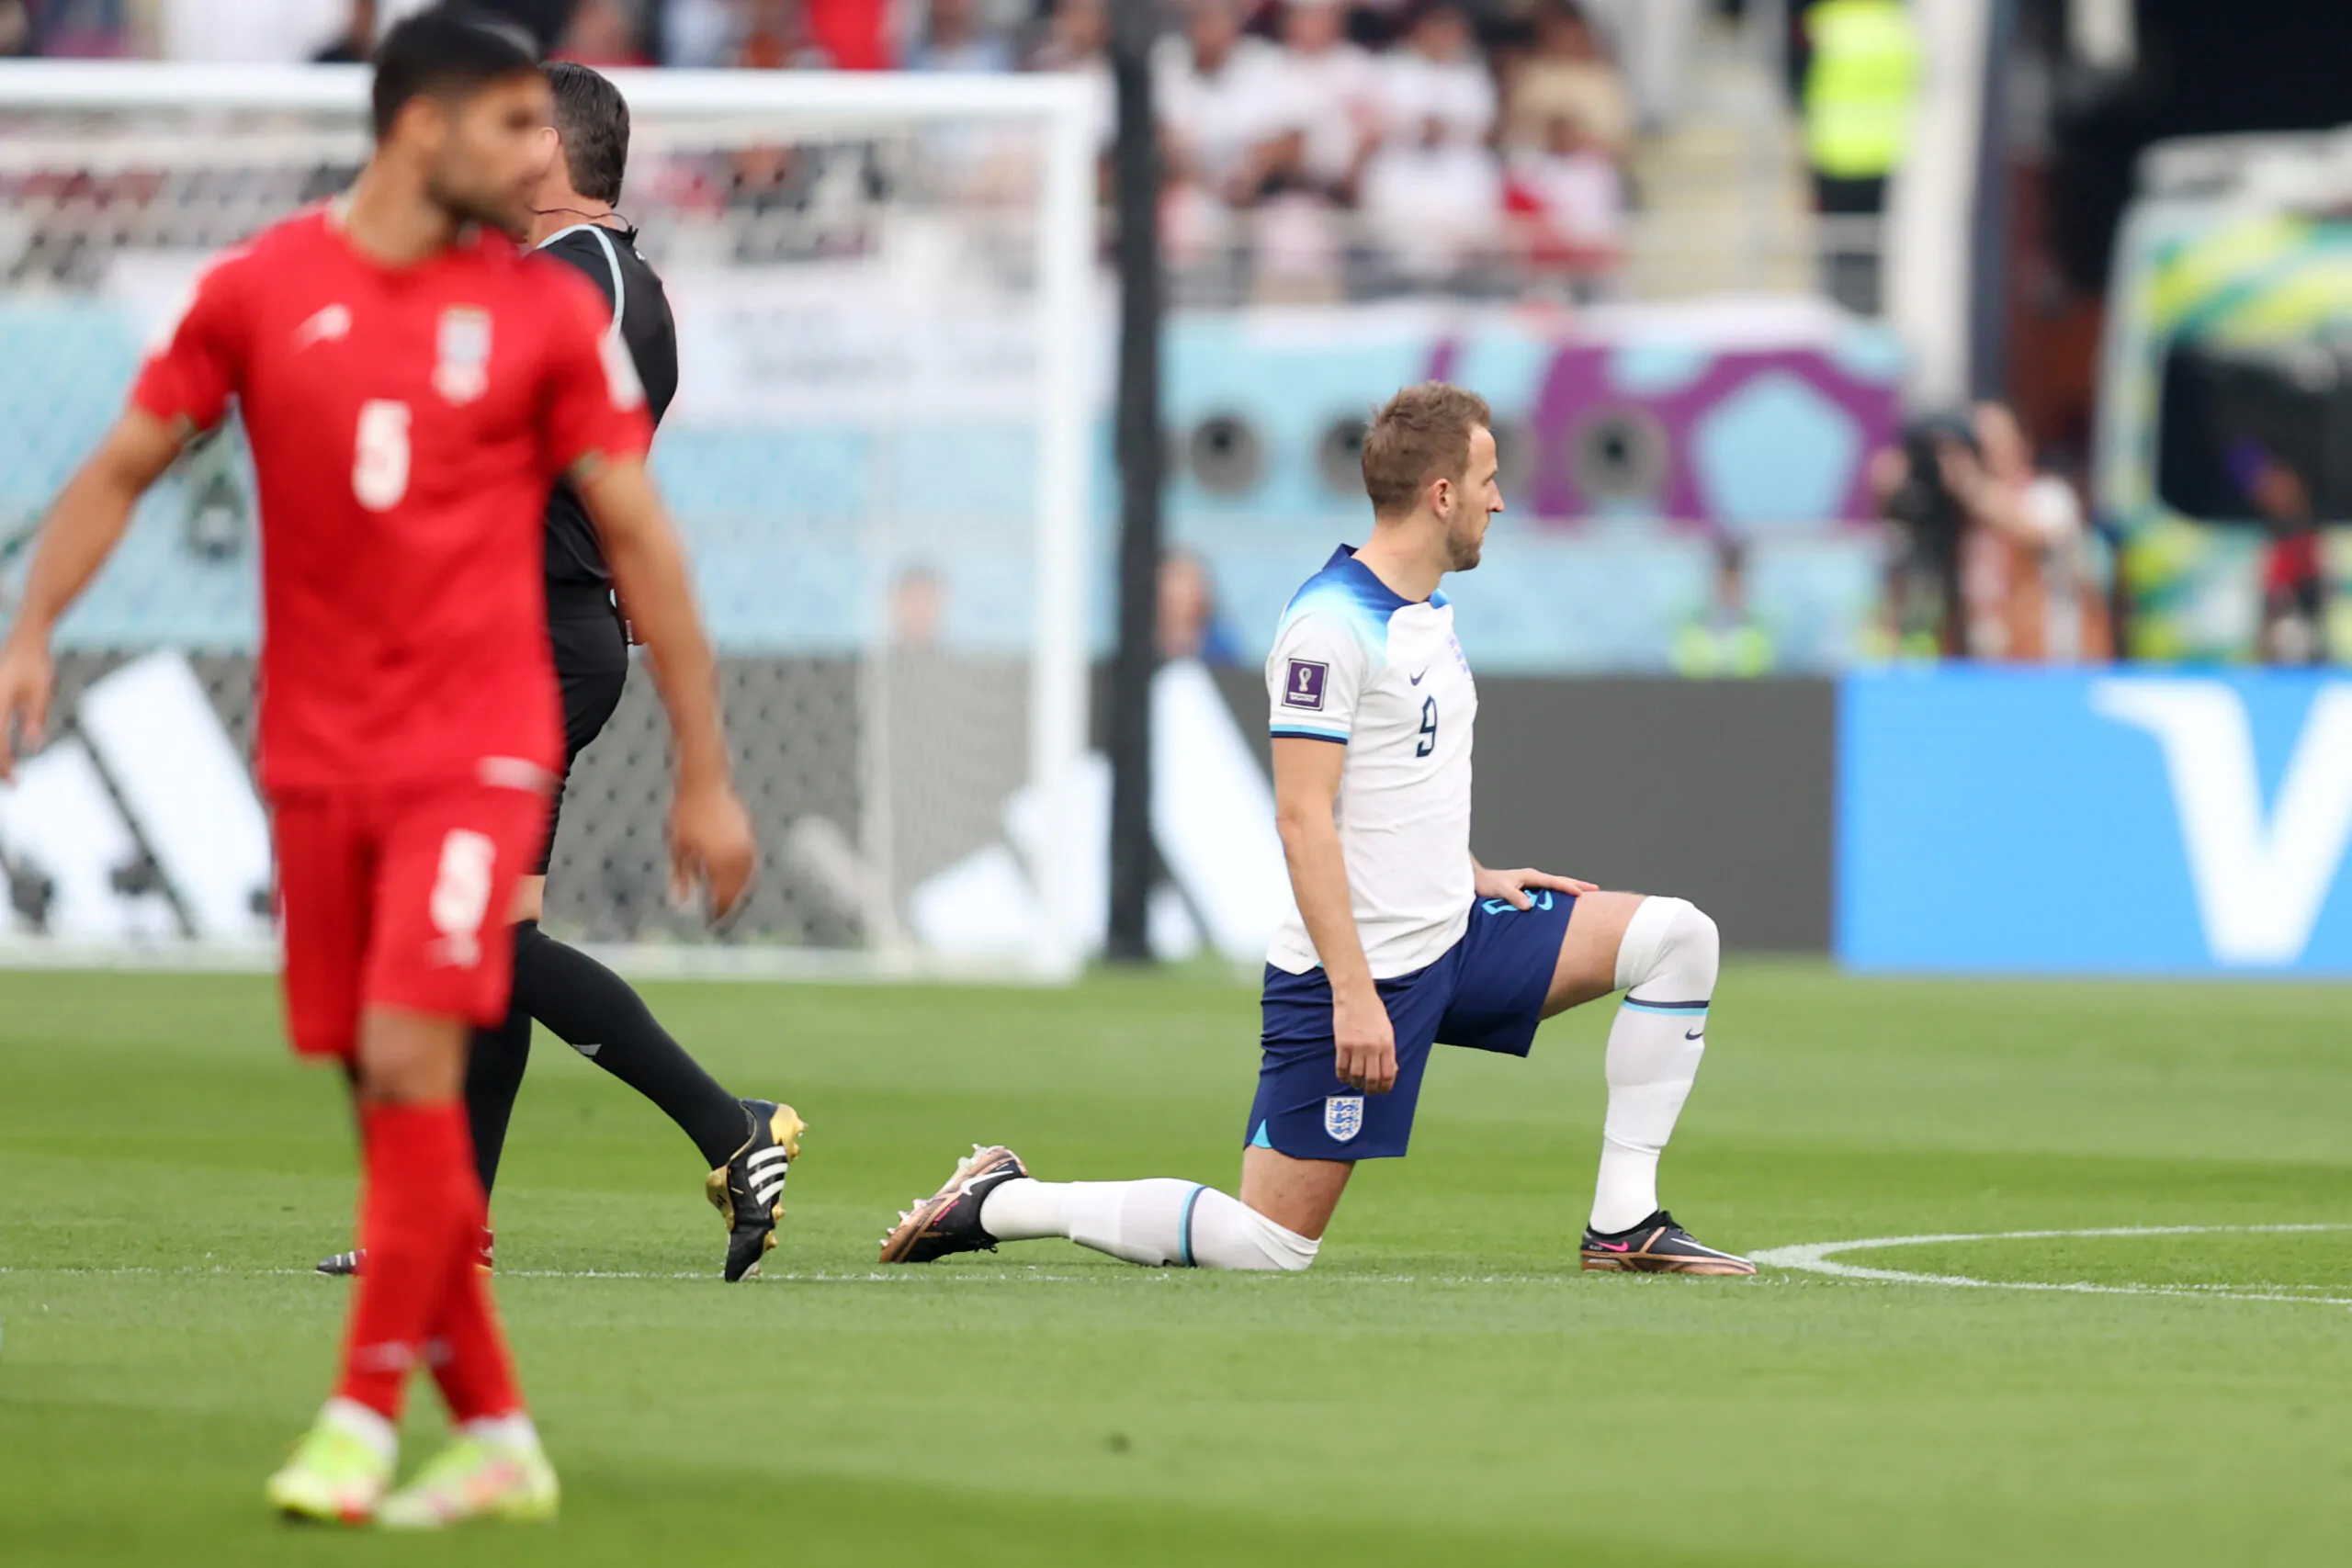 Inghilterra in ginocchio prima del match con l’Iran: reazione polemica dello stadio